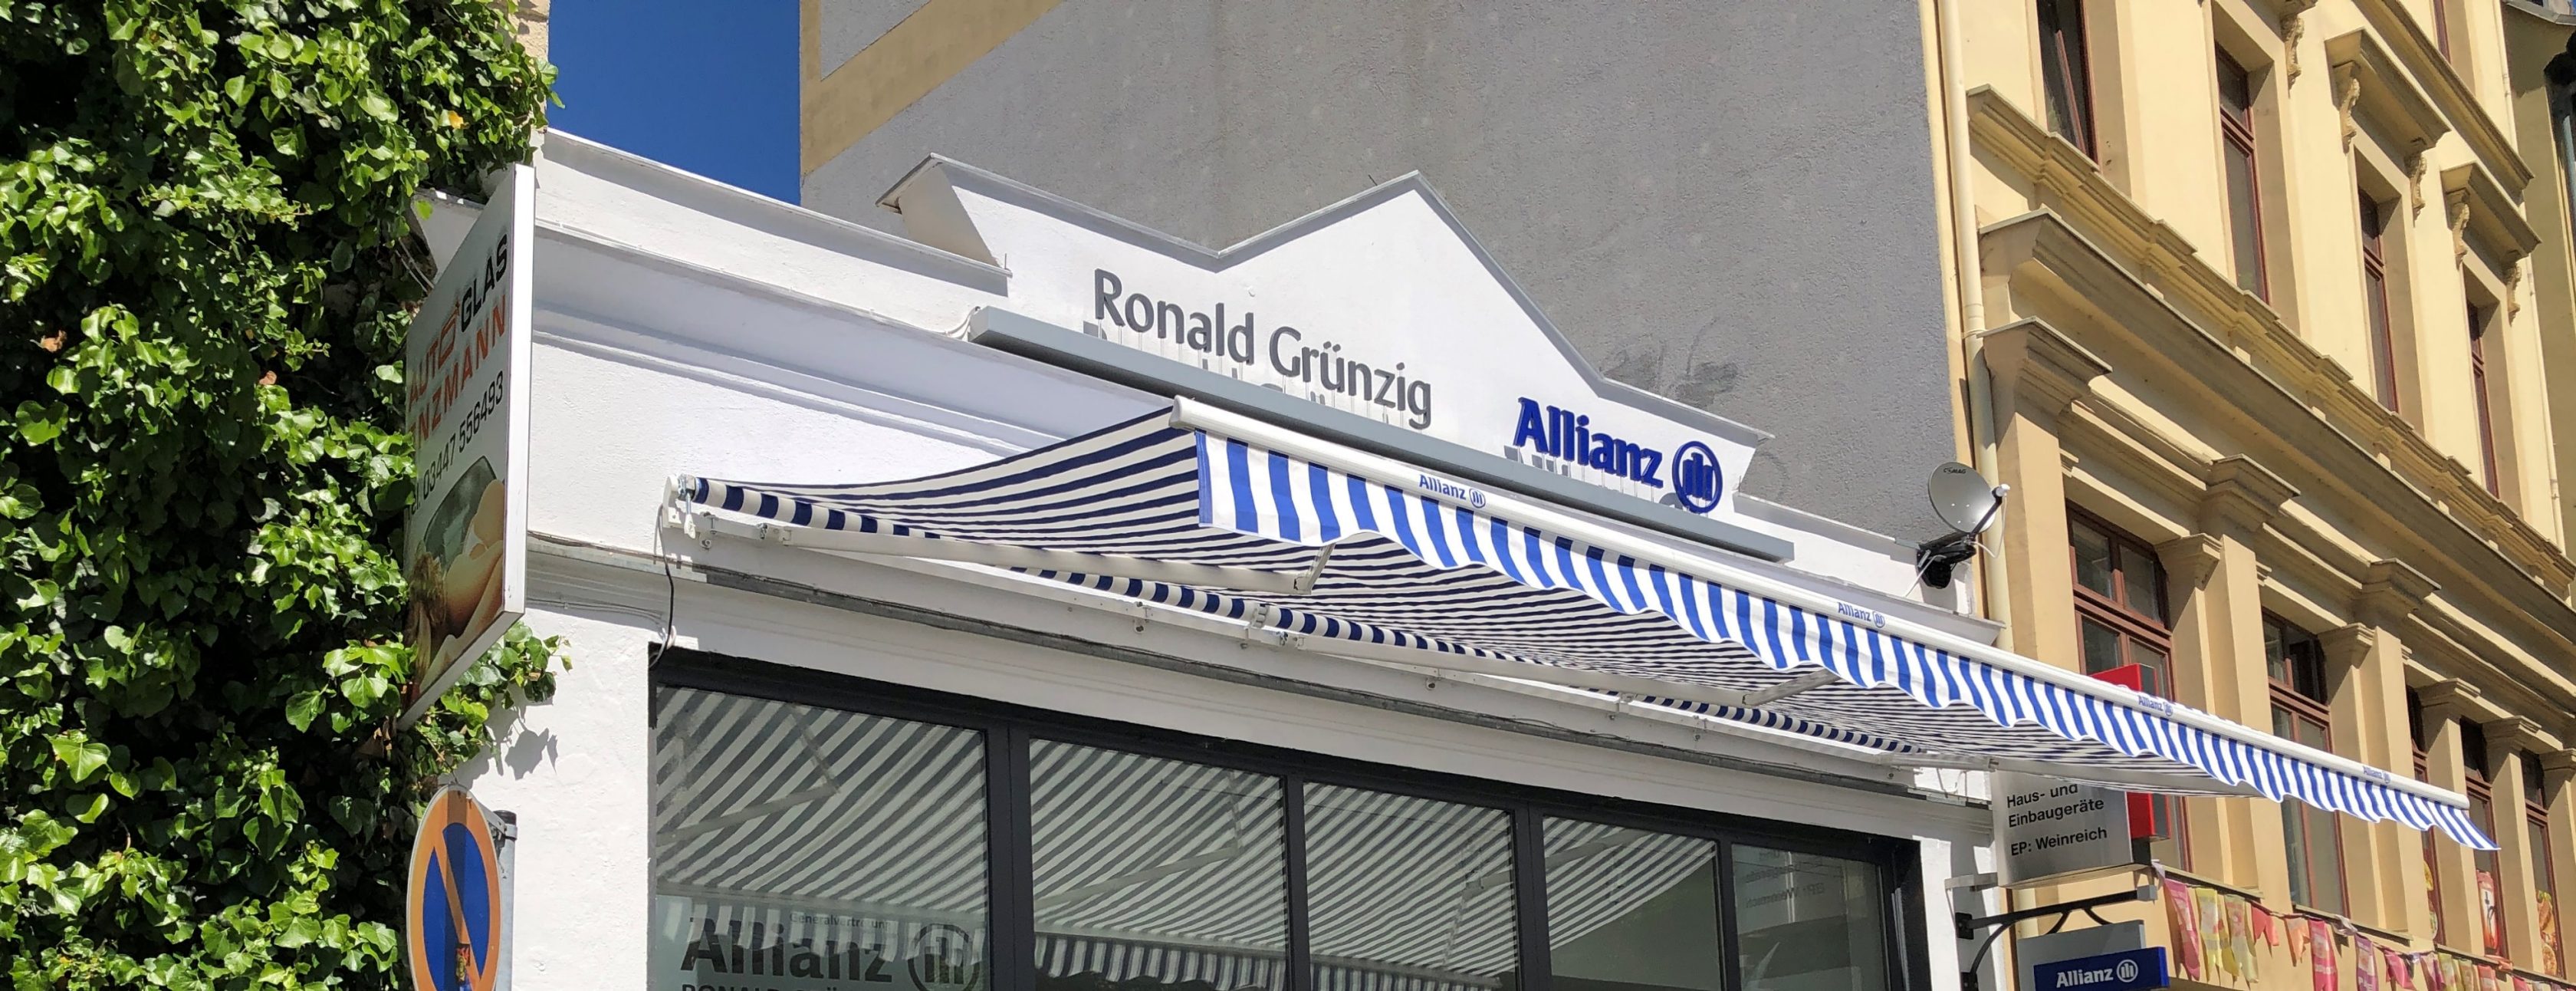 Allianz Versicherung Ronald Grünzig Altenburg - Ihre Allianz-Agentur in Altenburg